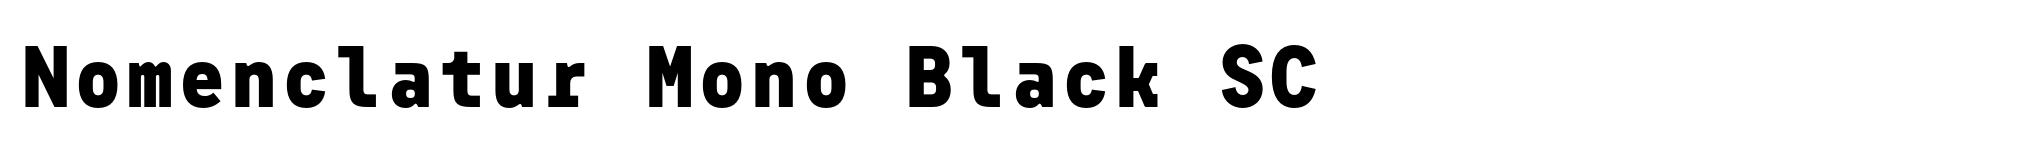 Nomenclatur Mono Black SC image